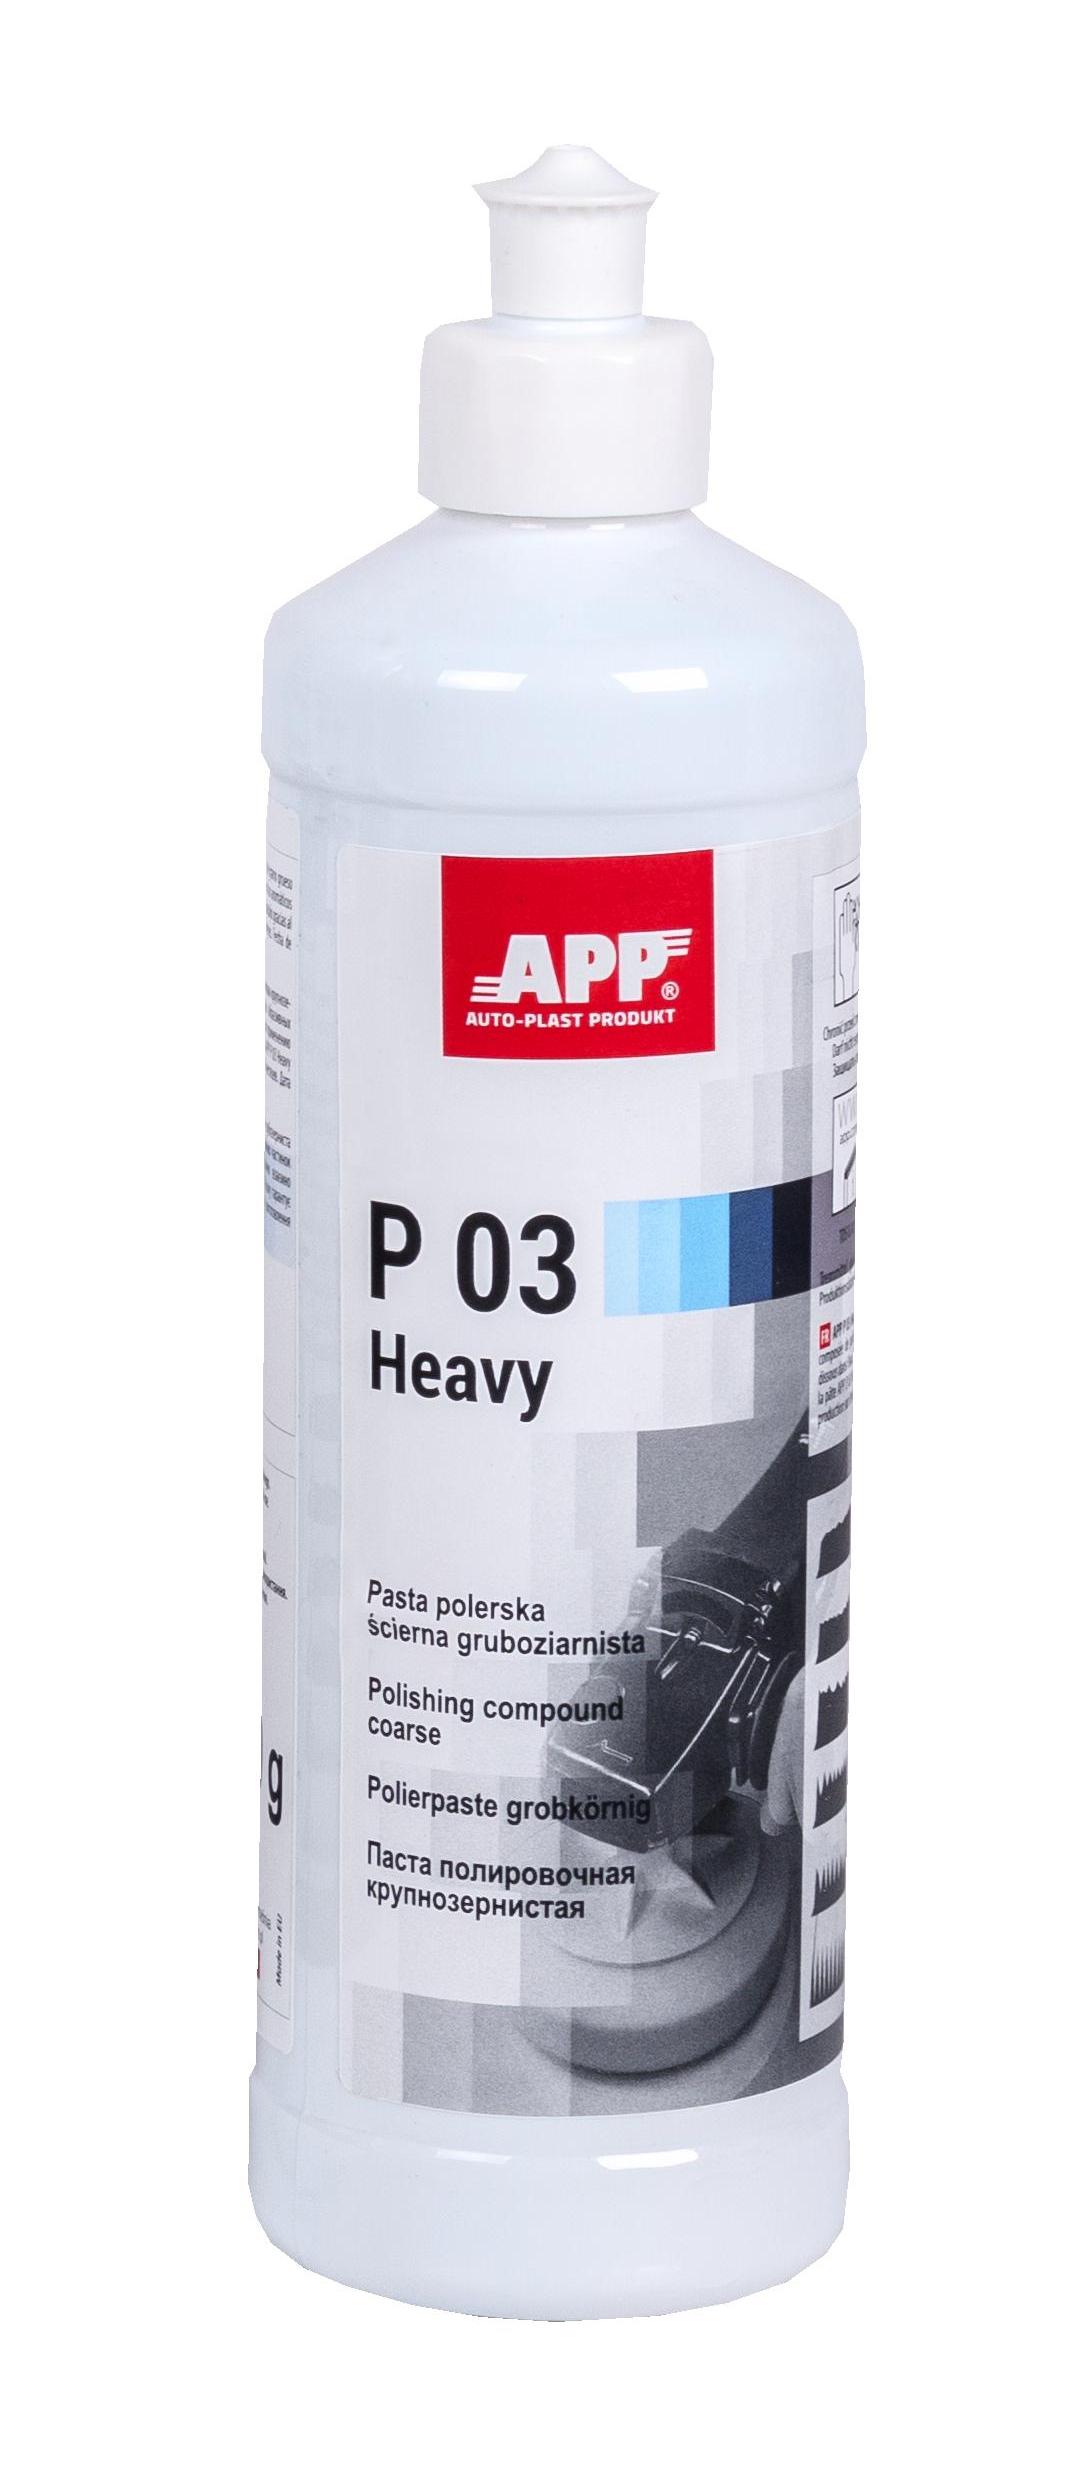 APP 081301 Heavy Duty Compound - P03 Polierpaste Politur grobkörnig 600 g | Schleifpaste polieren Paste Autolack grob